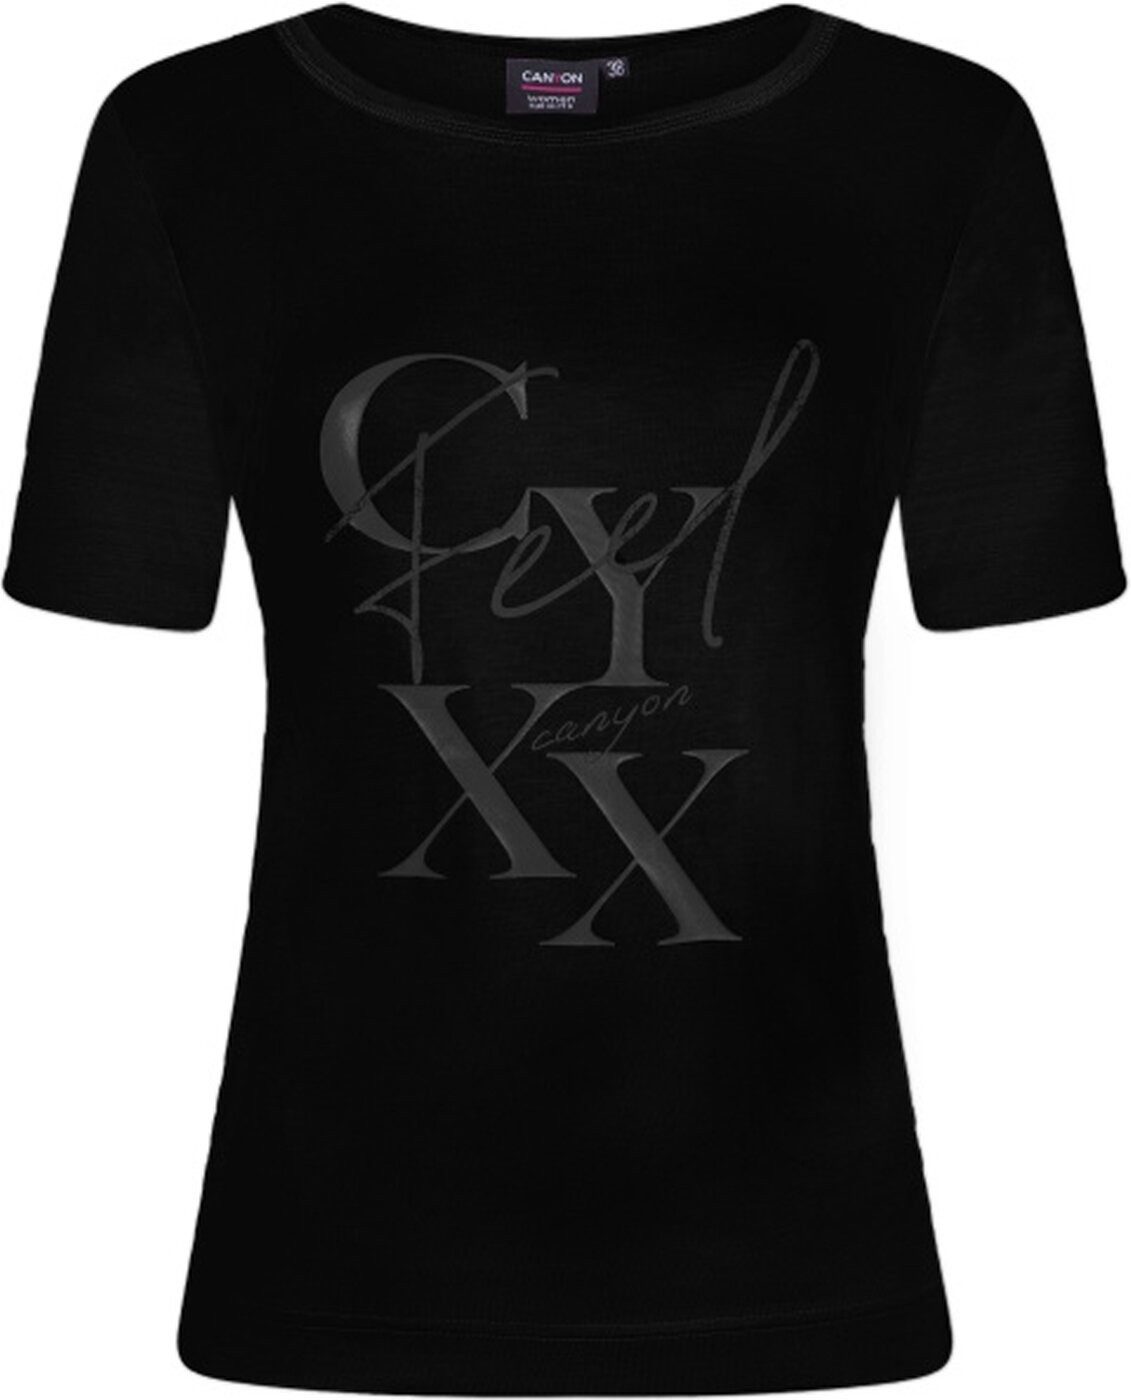 Canyon T-Shirt T-Shirt 1/2 Arm BLACK